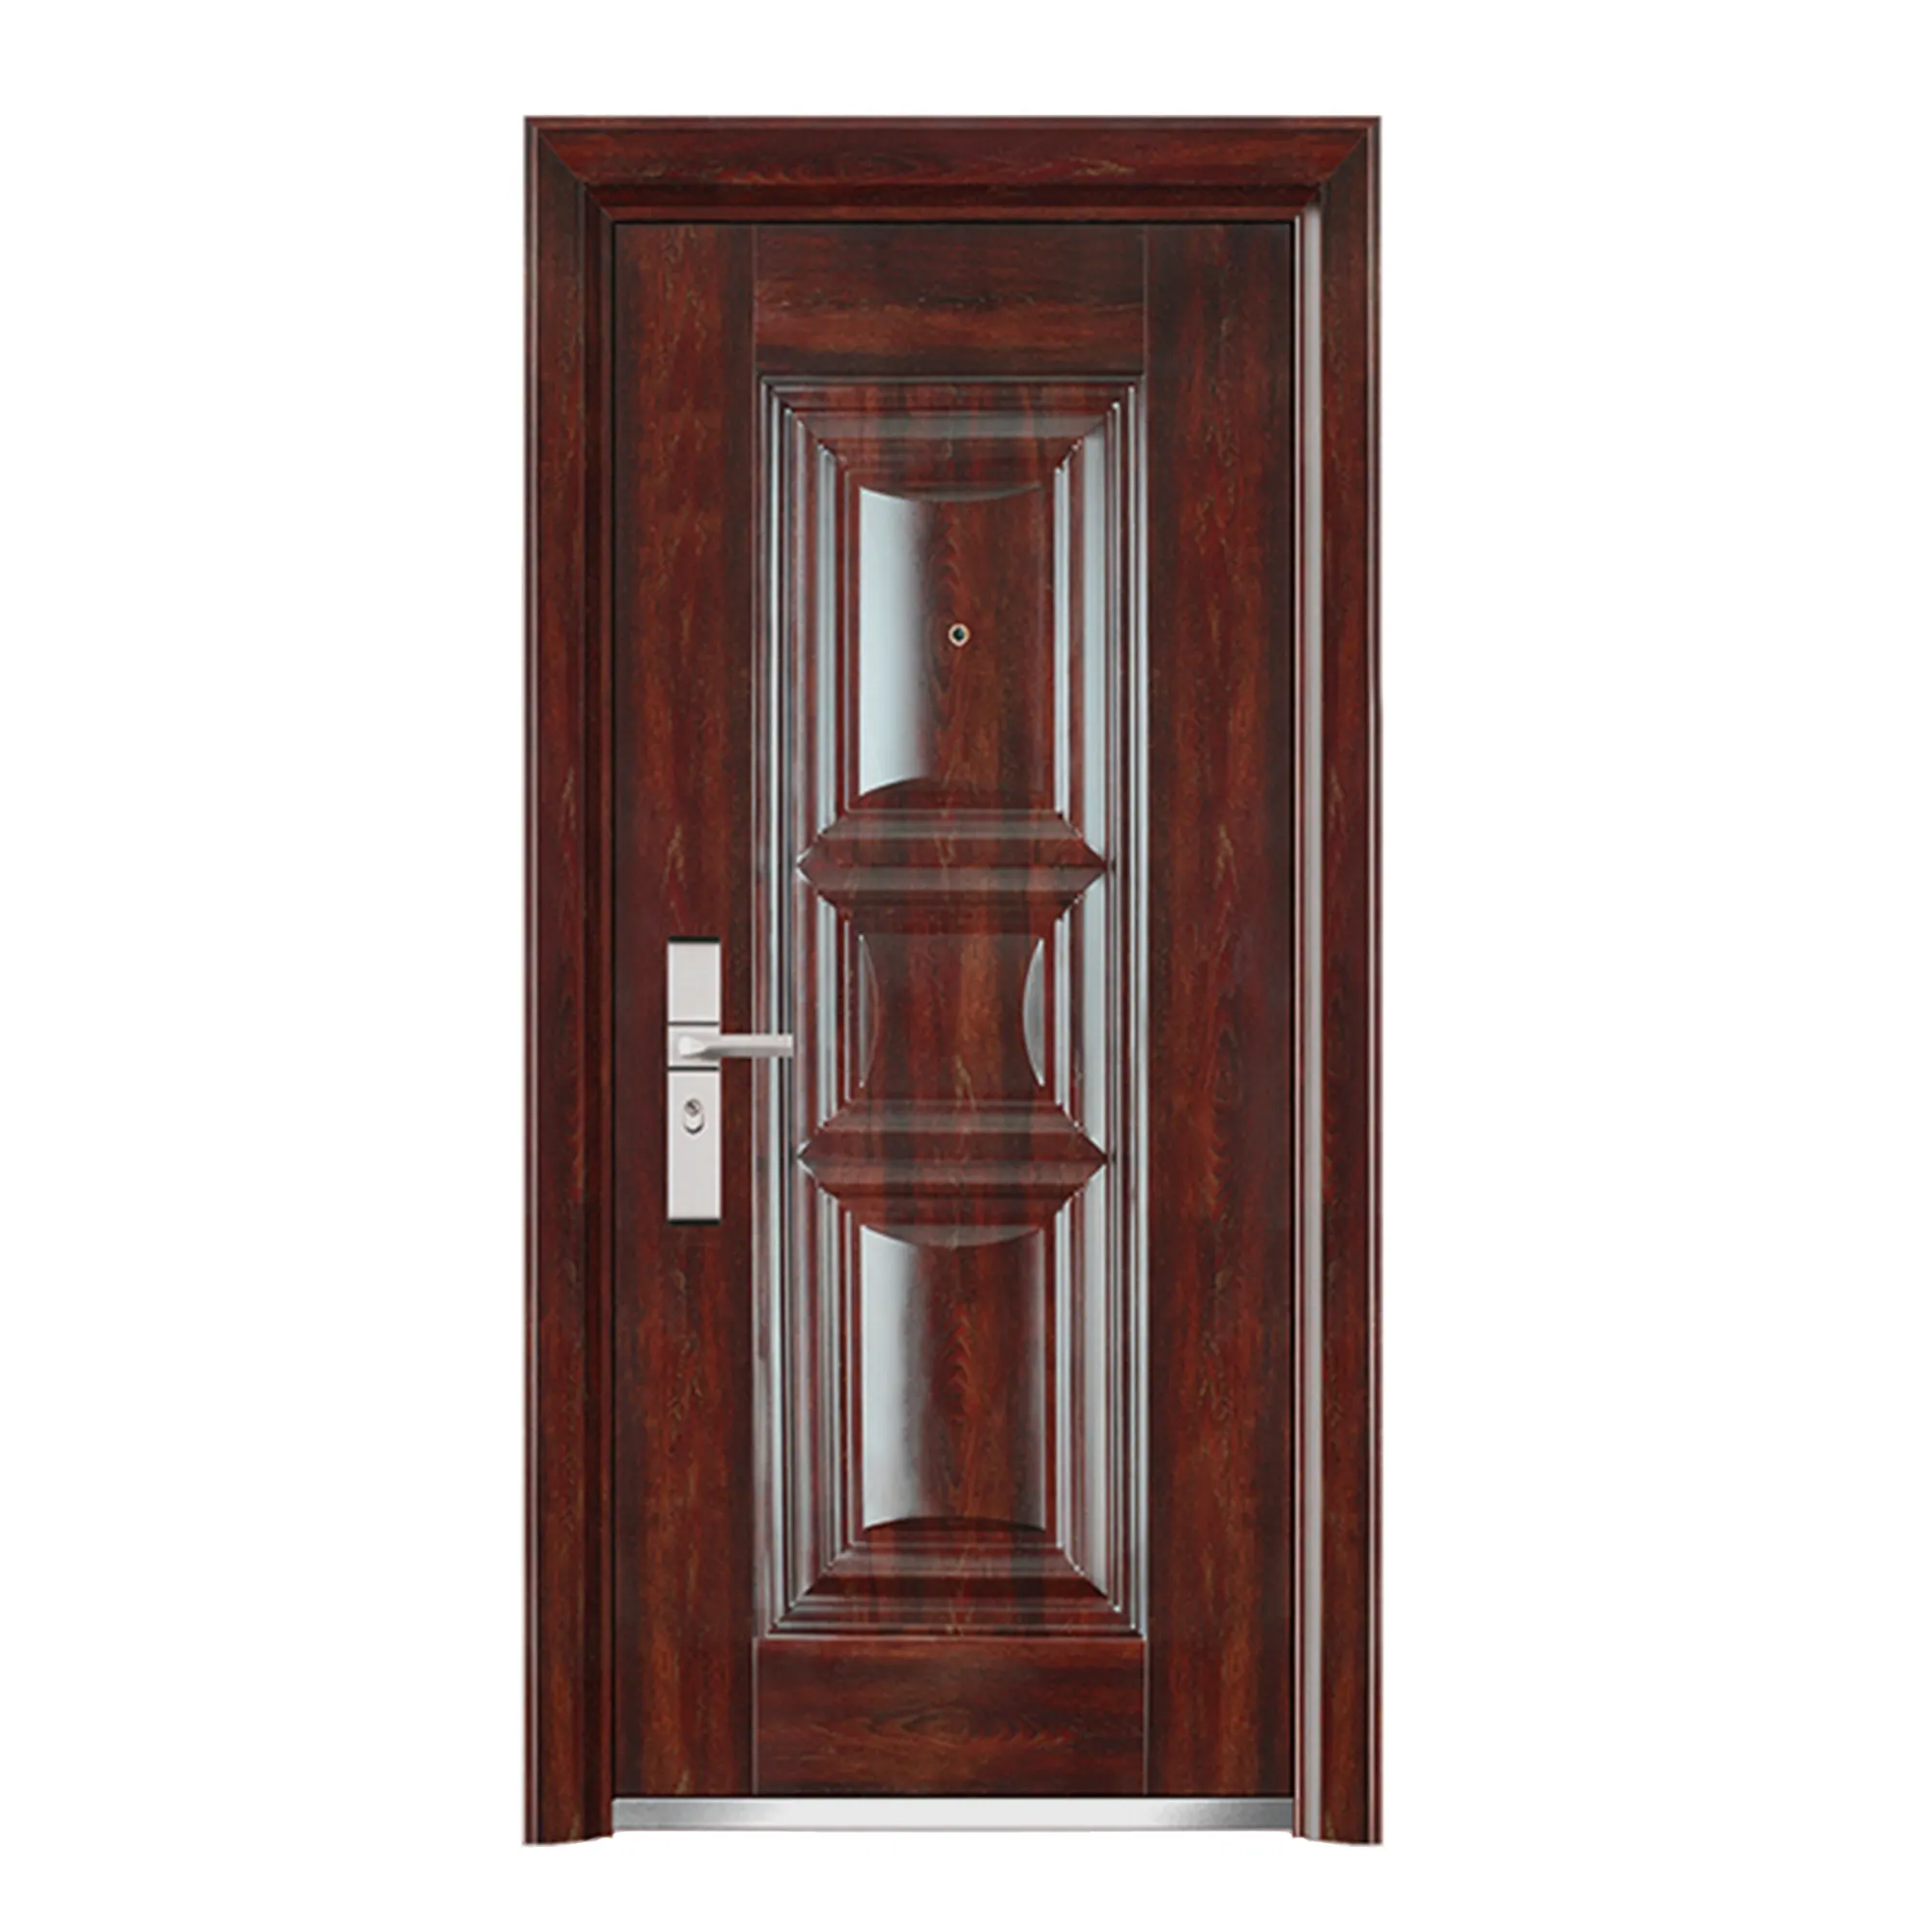 Novel Design Golden Supplier Cheap Steel Door Wrought Iron Antique Entry Door With Low Price Security Home Doors